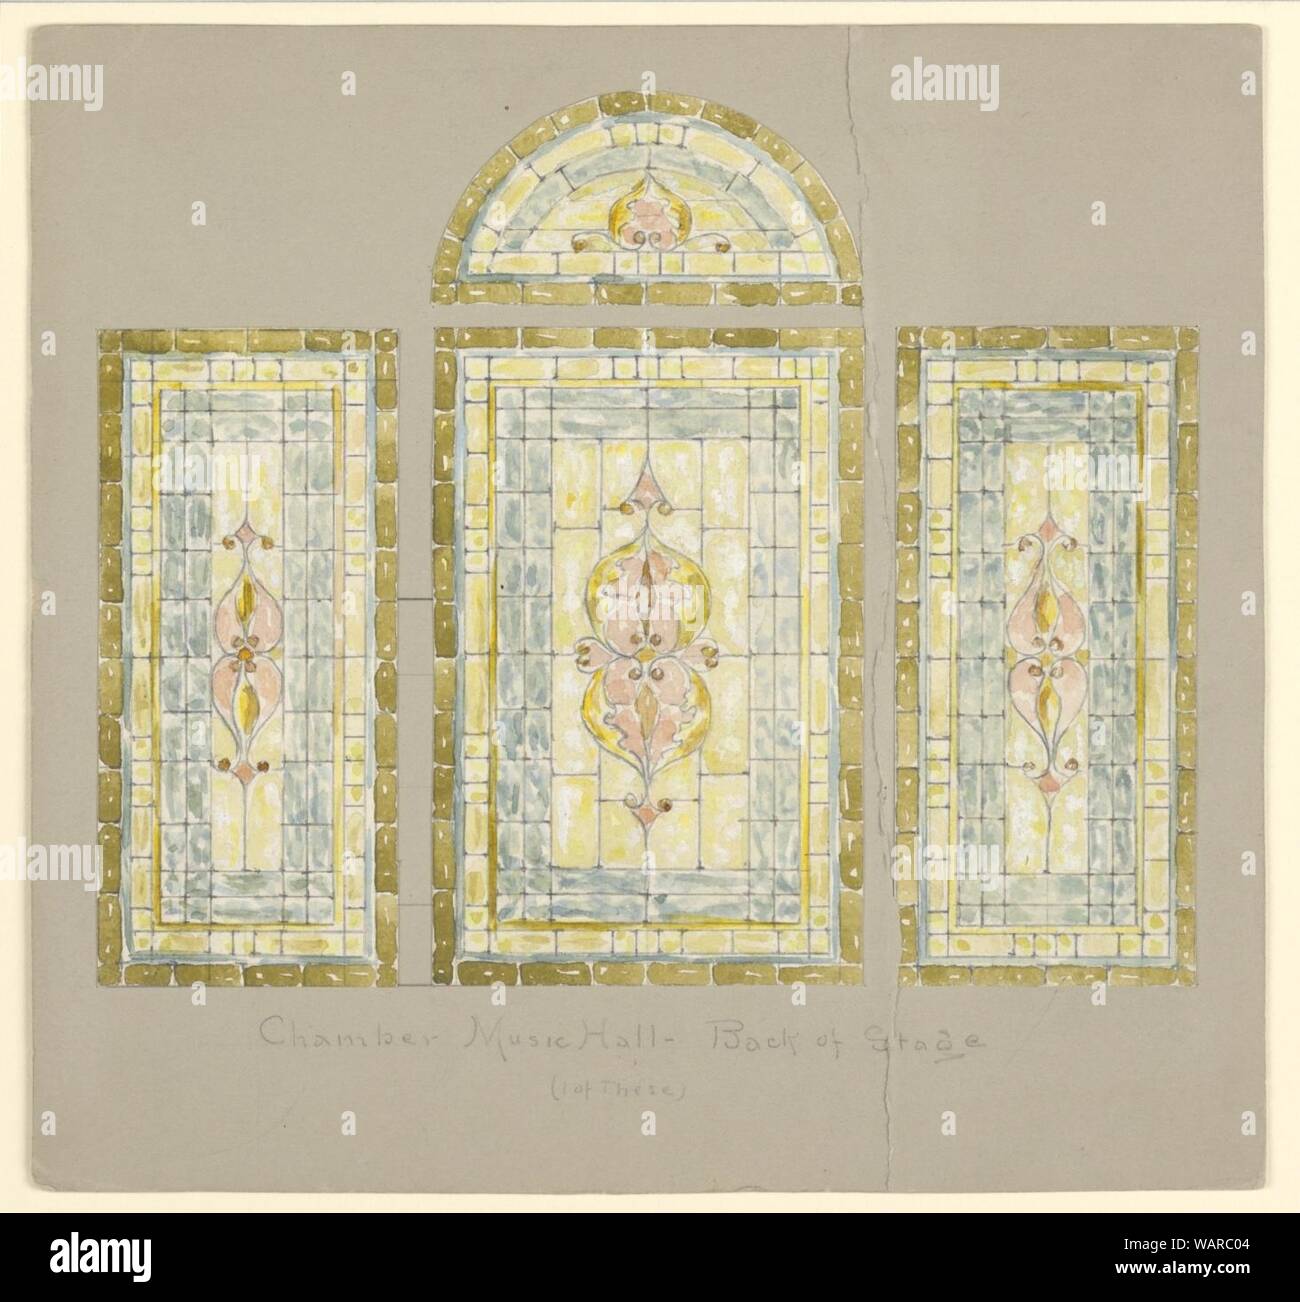 Zeichnung, Design für Glasfenster - Chamber Music Hall - wieder von der Bühne, Carnegie Hall, New York, NY, 19. Jahrhundert Stockfoto